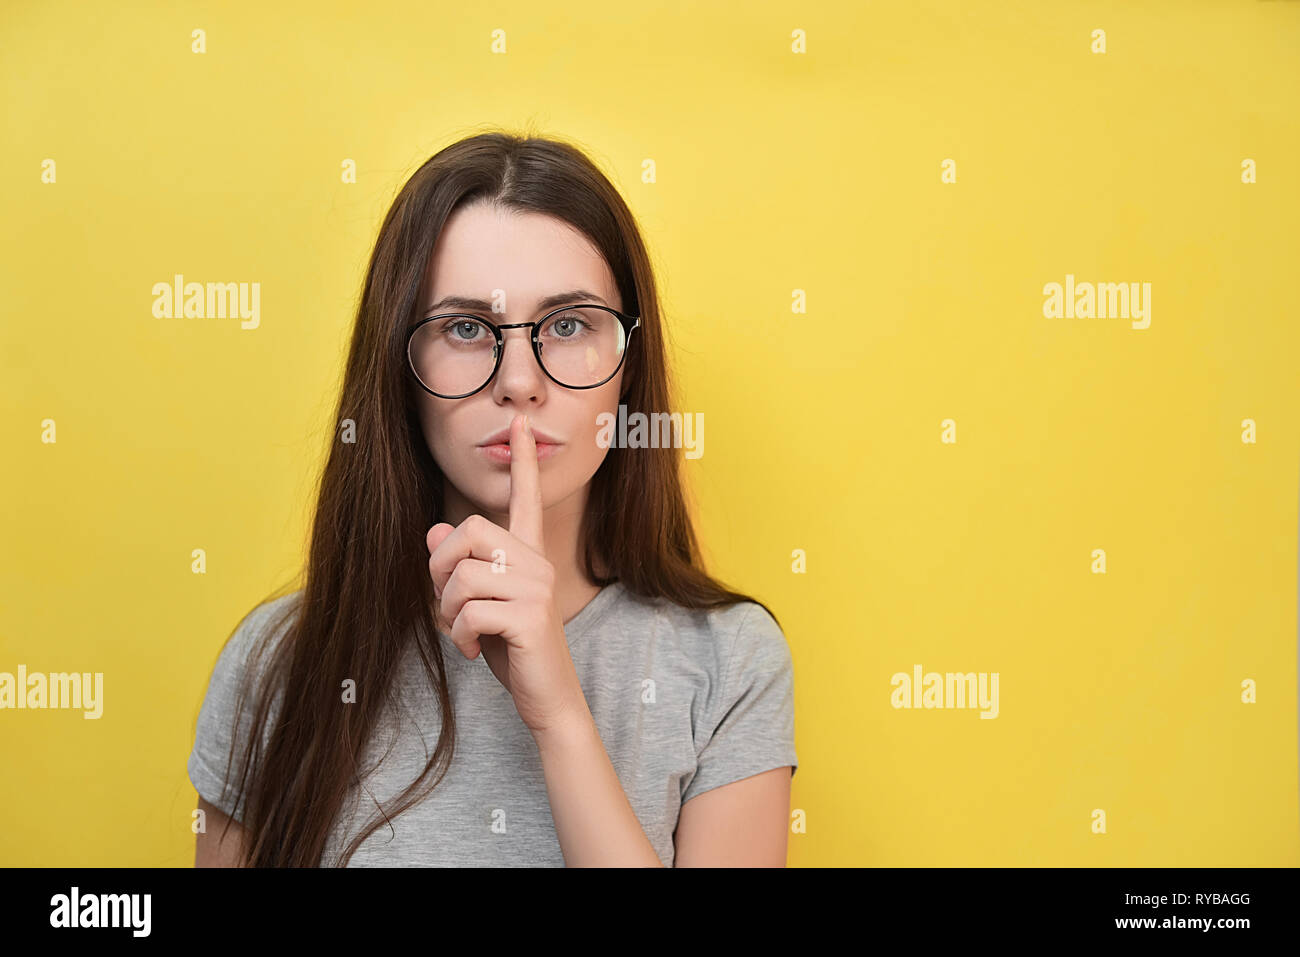 Jeune femme à lunettes avec expression perplexe, fait de silence intérieur,  de gestes d'avancement permet de rester collés sur les lèvres, de peur que  quelqu'un de révéler son secret, se trouve un